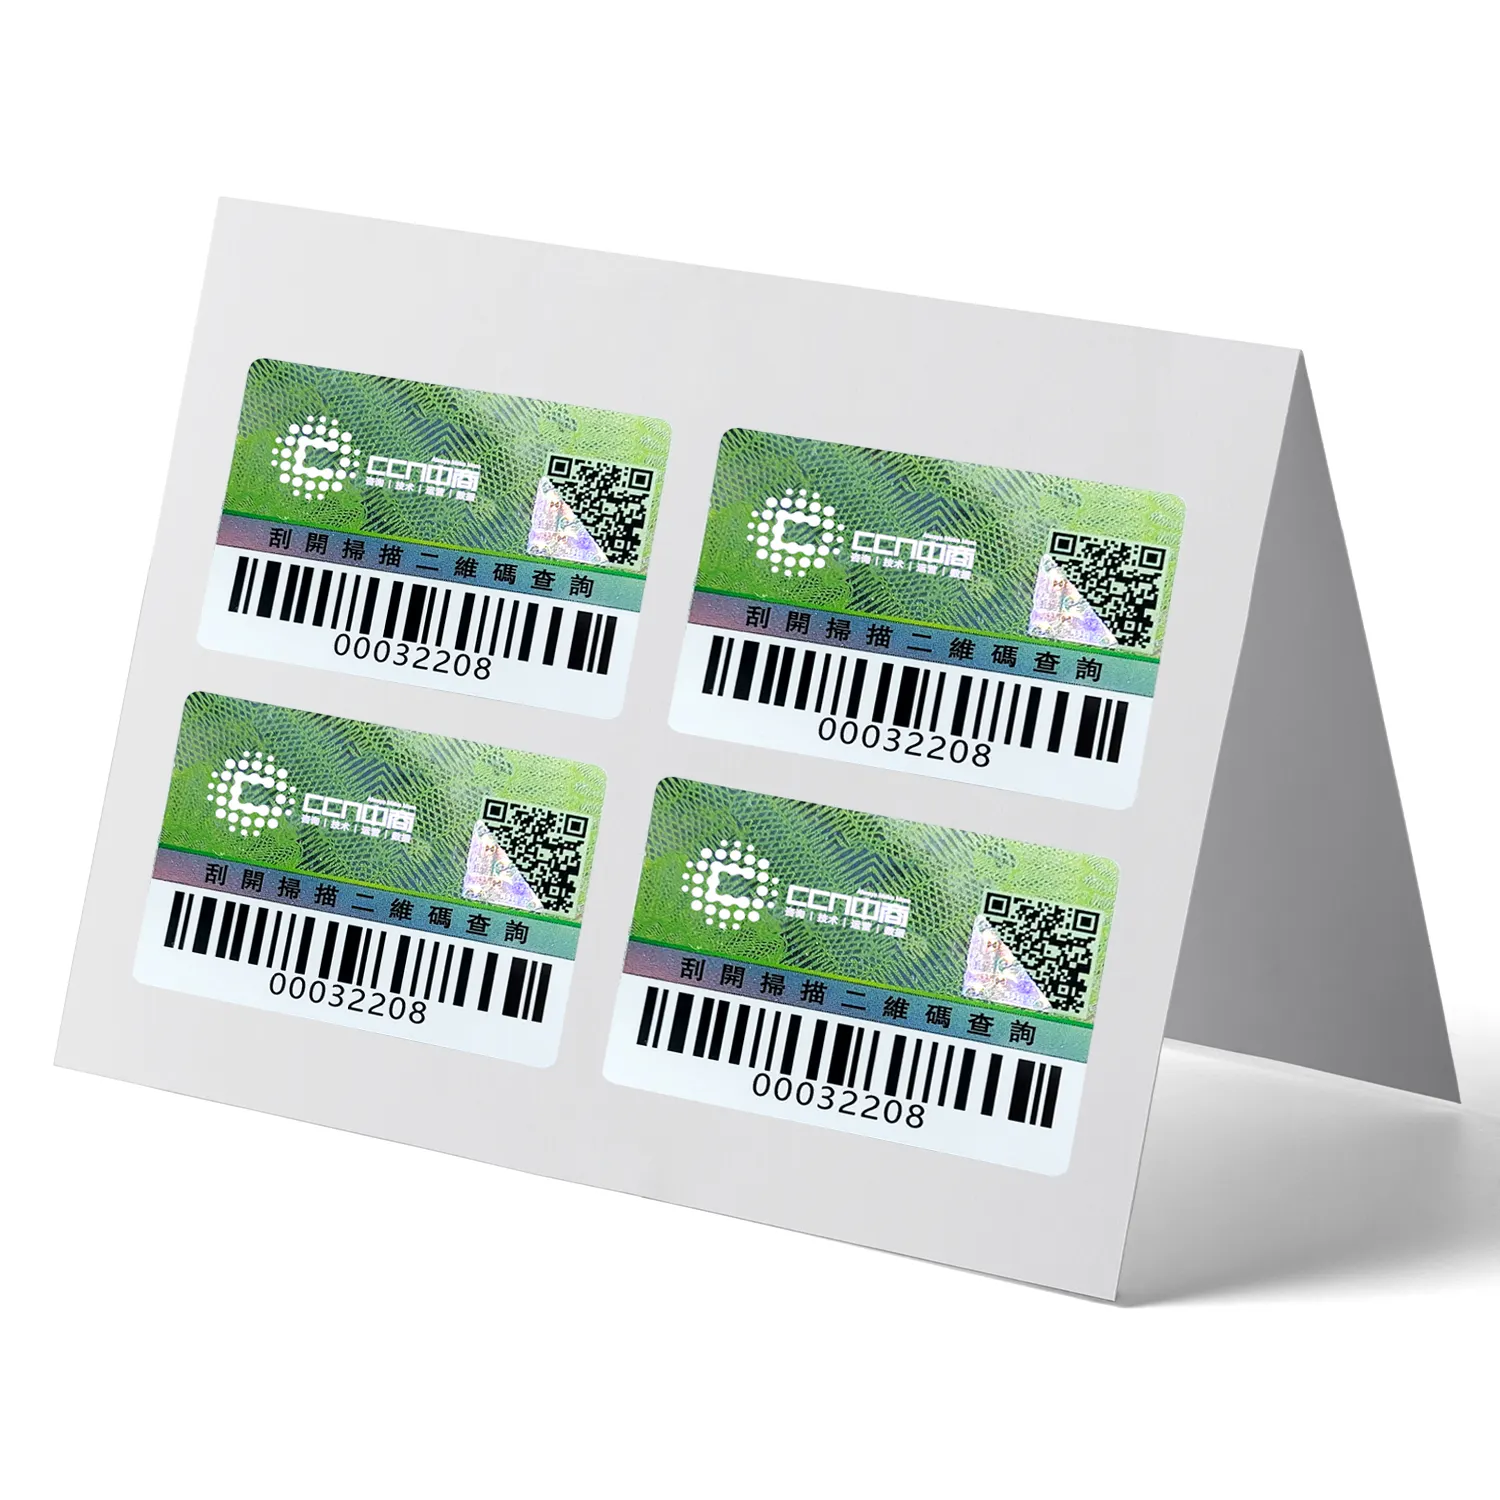 Rolos de adesivos com holograma baratos, códigos de barras, etiquetas adesivas com holograma 3D, impressão de etiquetas